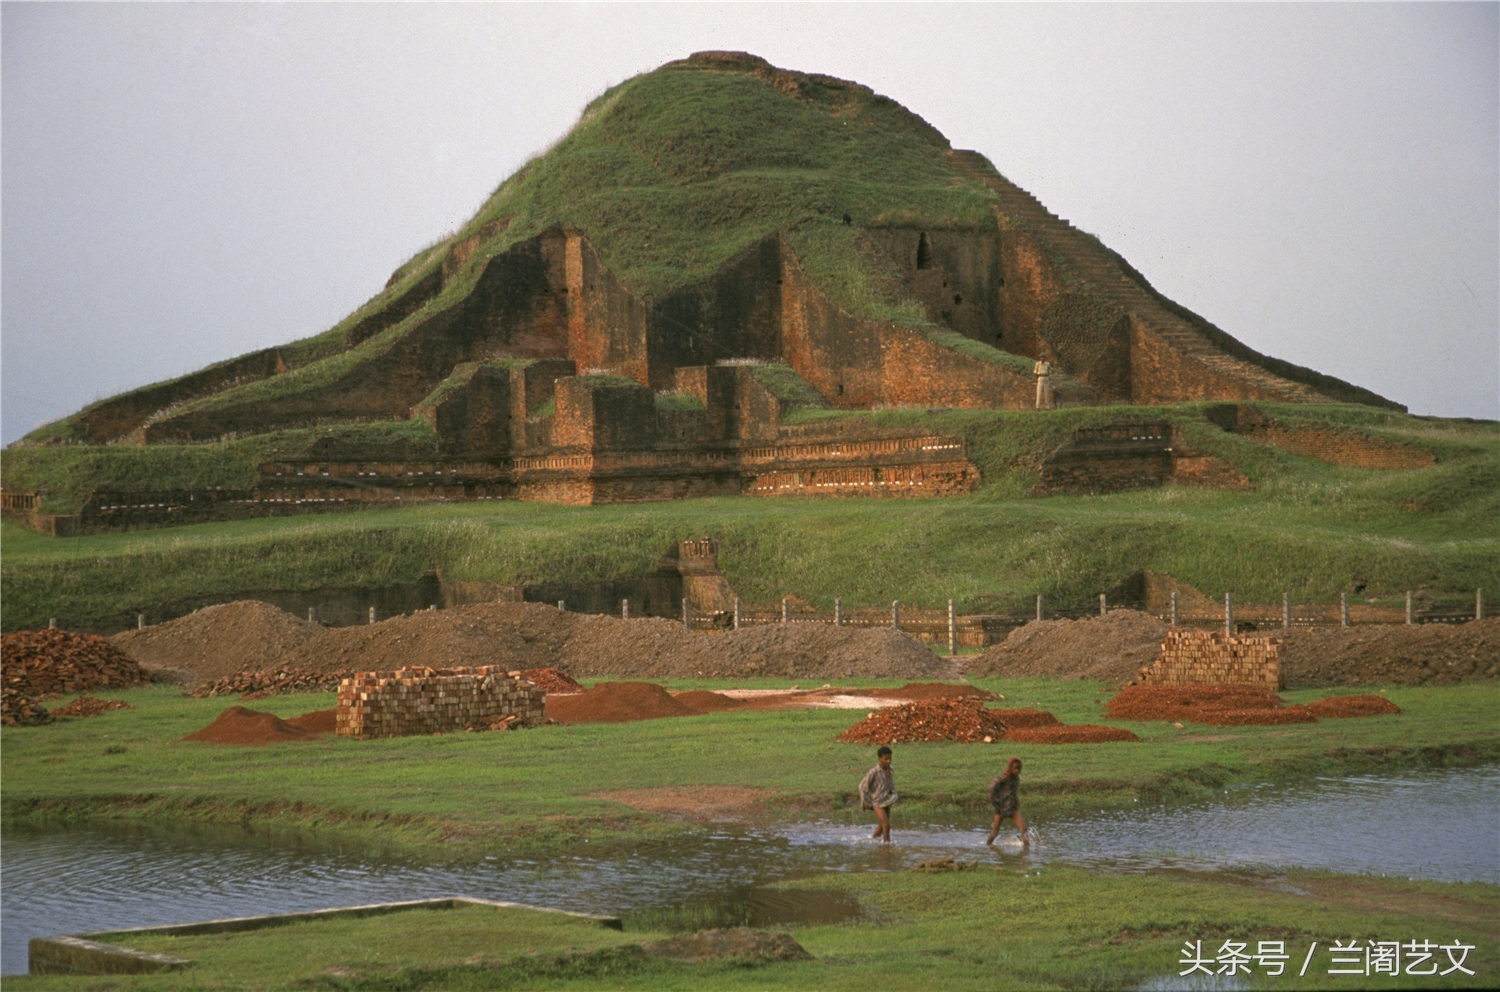 孟加拉国帕哈尔普尔的佛教毗诃罗遗址占地9公顷！是一座带有围墙的大型砖制寺庙